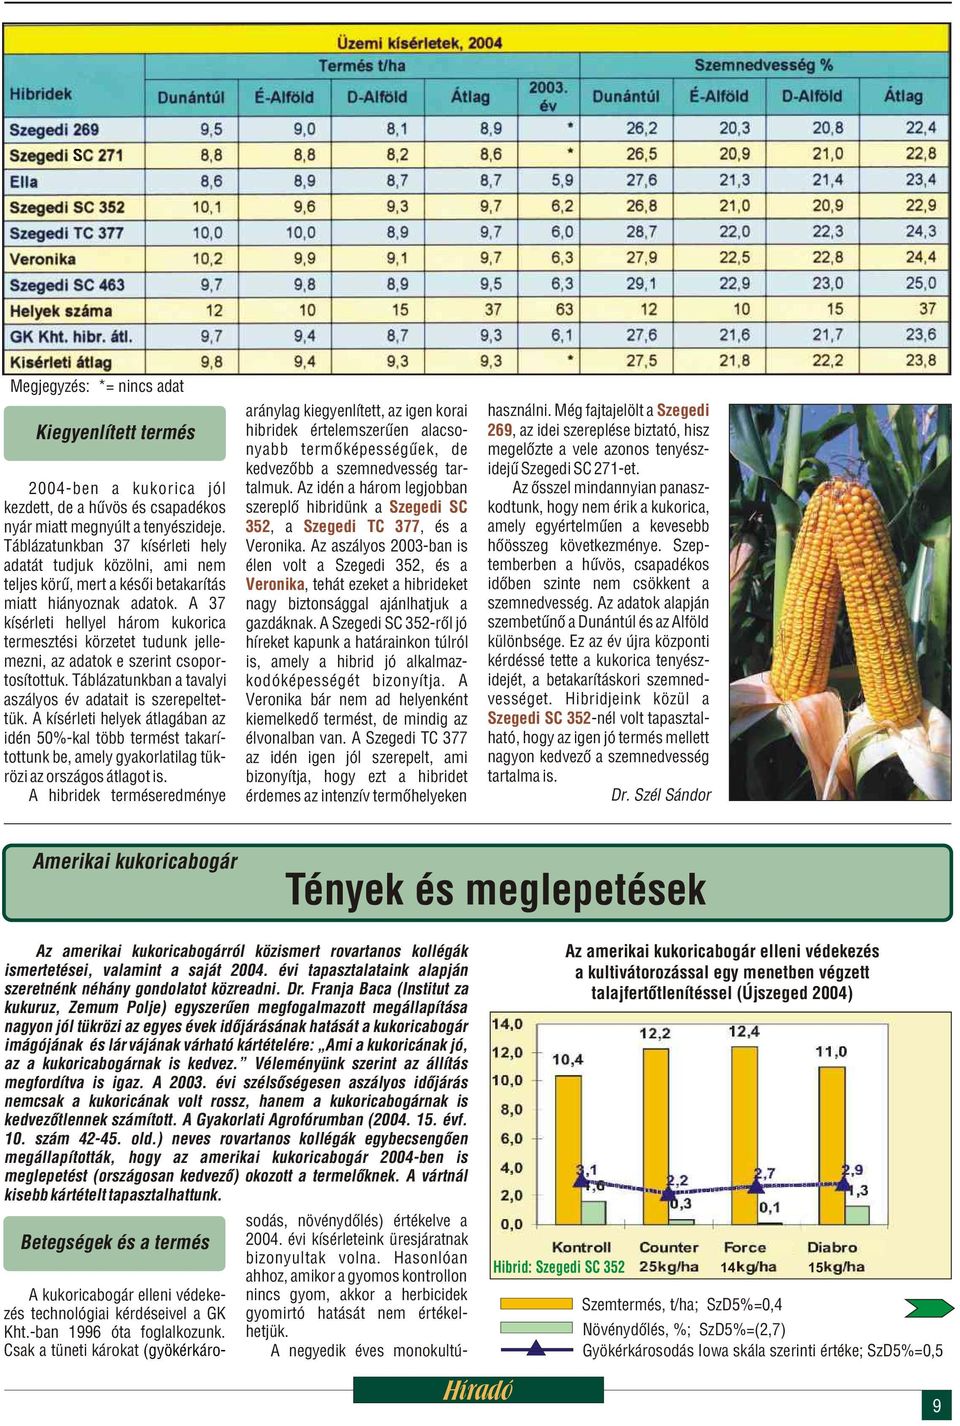 A 37 kísérleti hellyel három kukorica termesztési körzetet tudunk jellemezni, az adatok e szerint csoportosítottuk. Táblázatunkban a tavalyi aszályos év adatait is szerepeltettük.